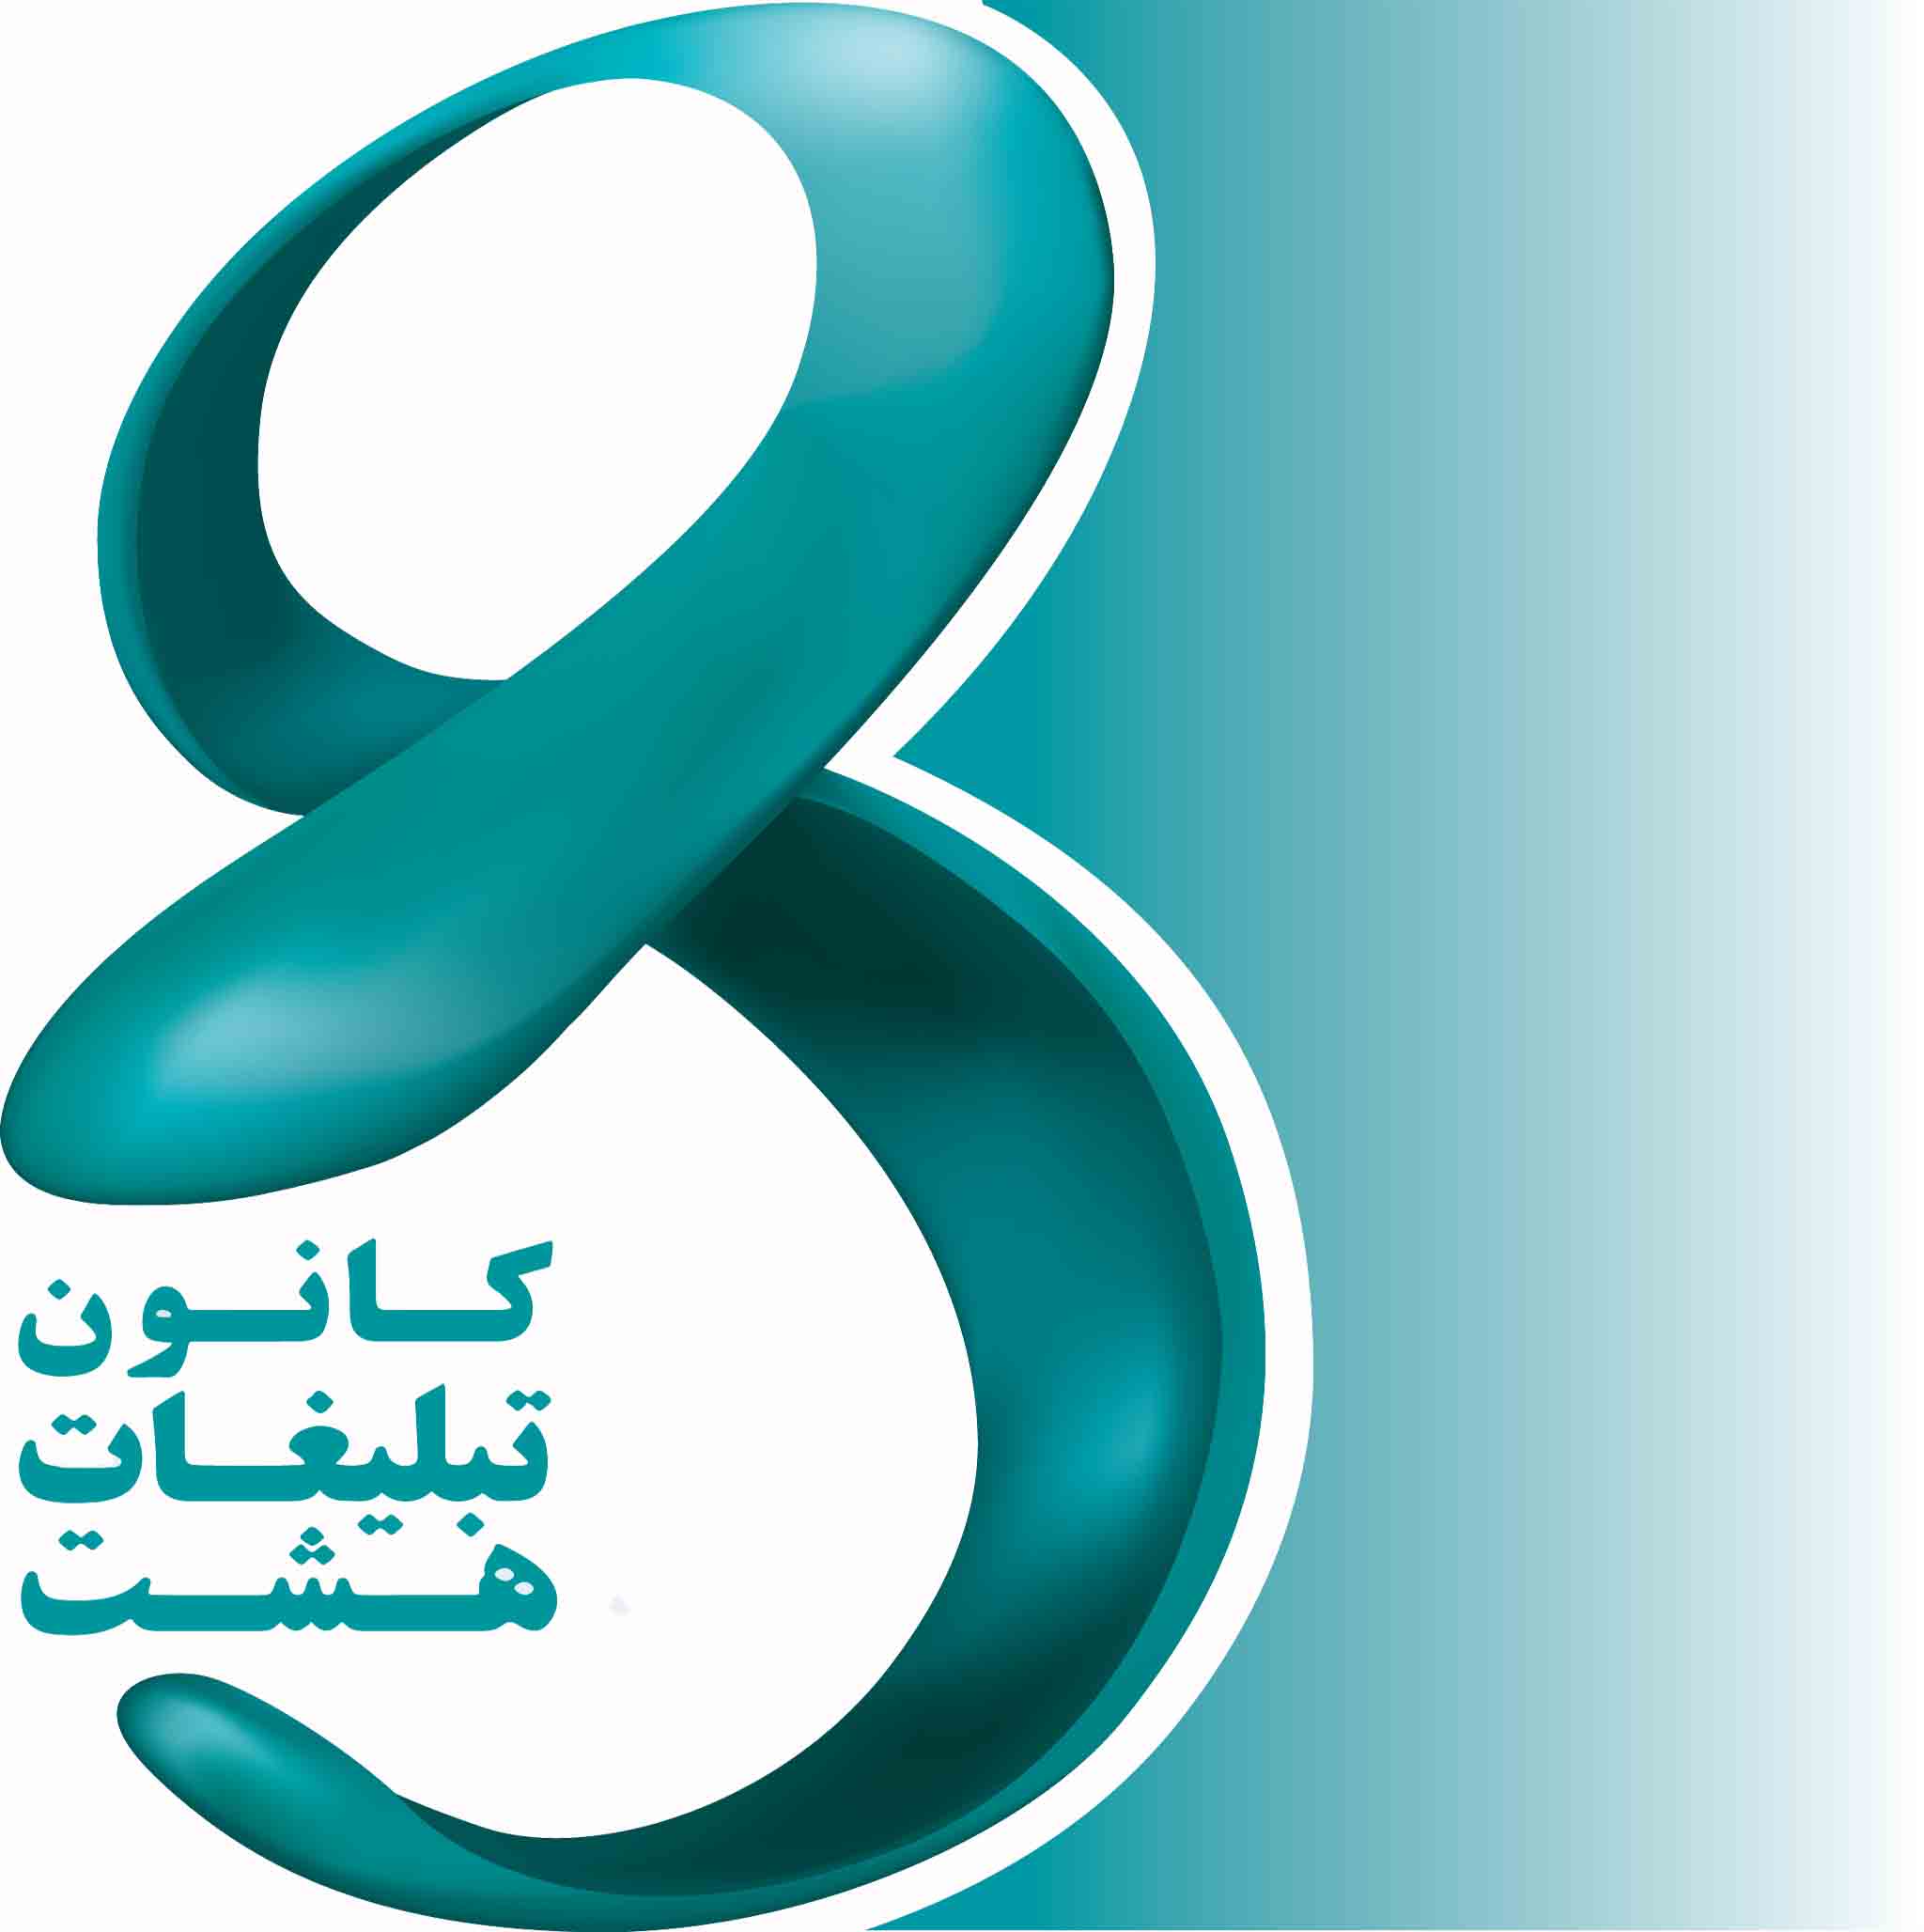 کانون تبلیغاتی هشت دارای مجوز از وزارت فرهنگ و ارشاد اسلامی